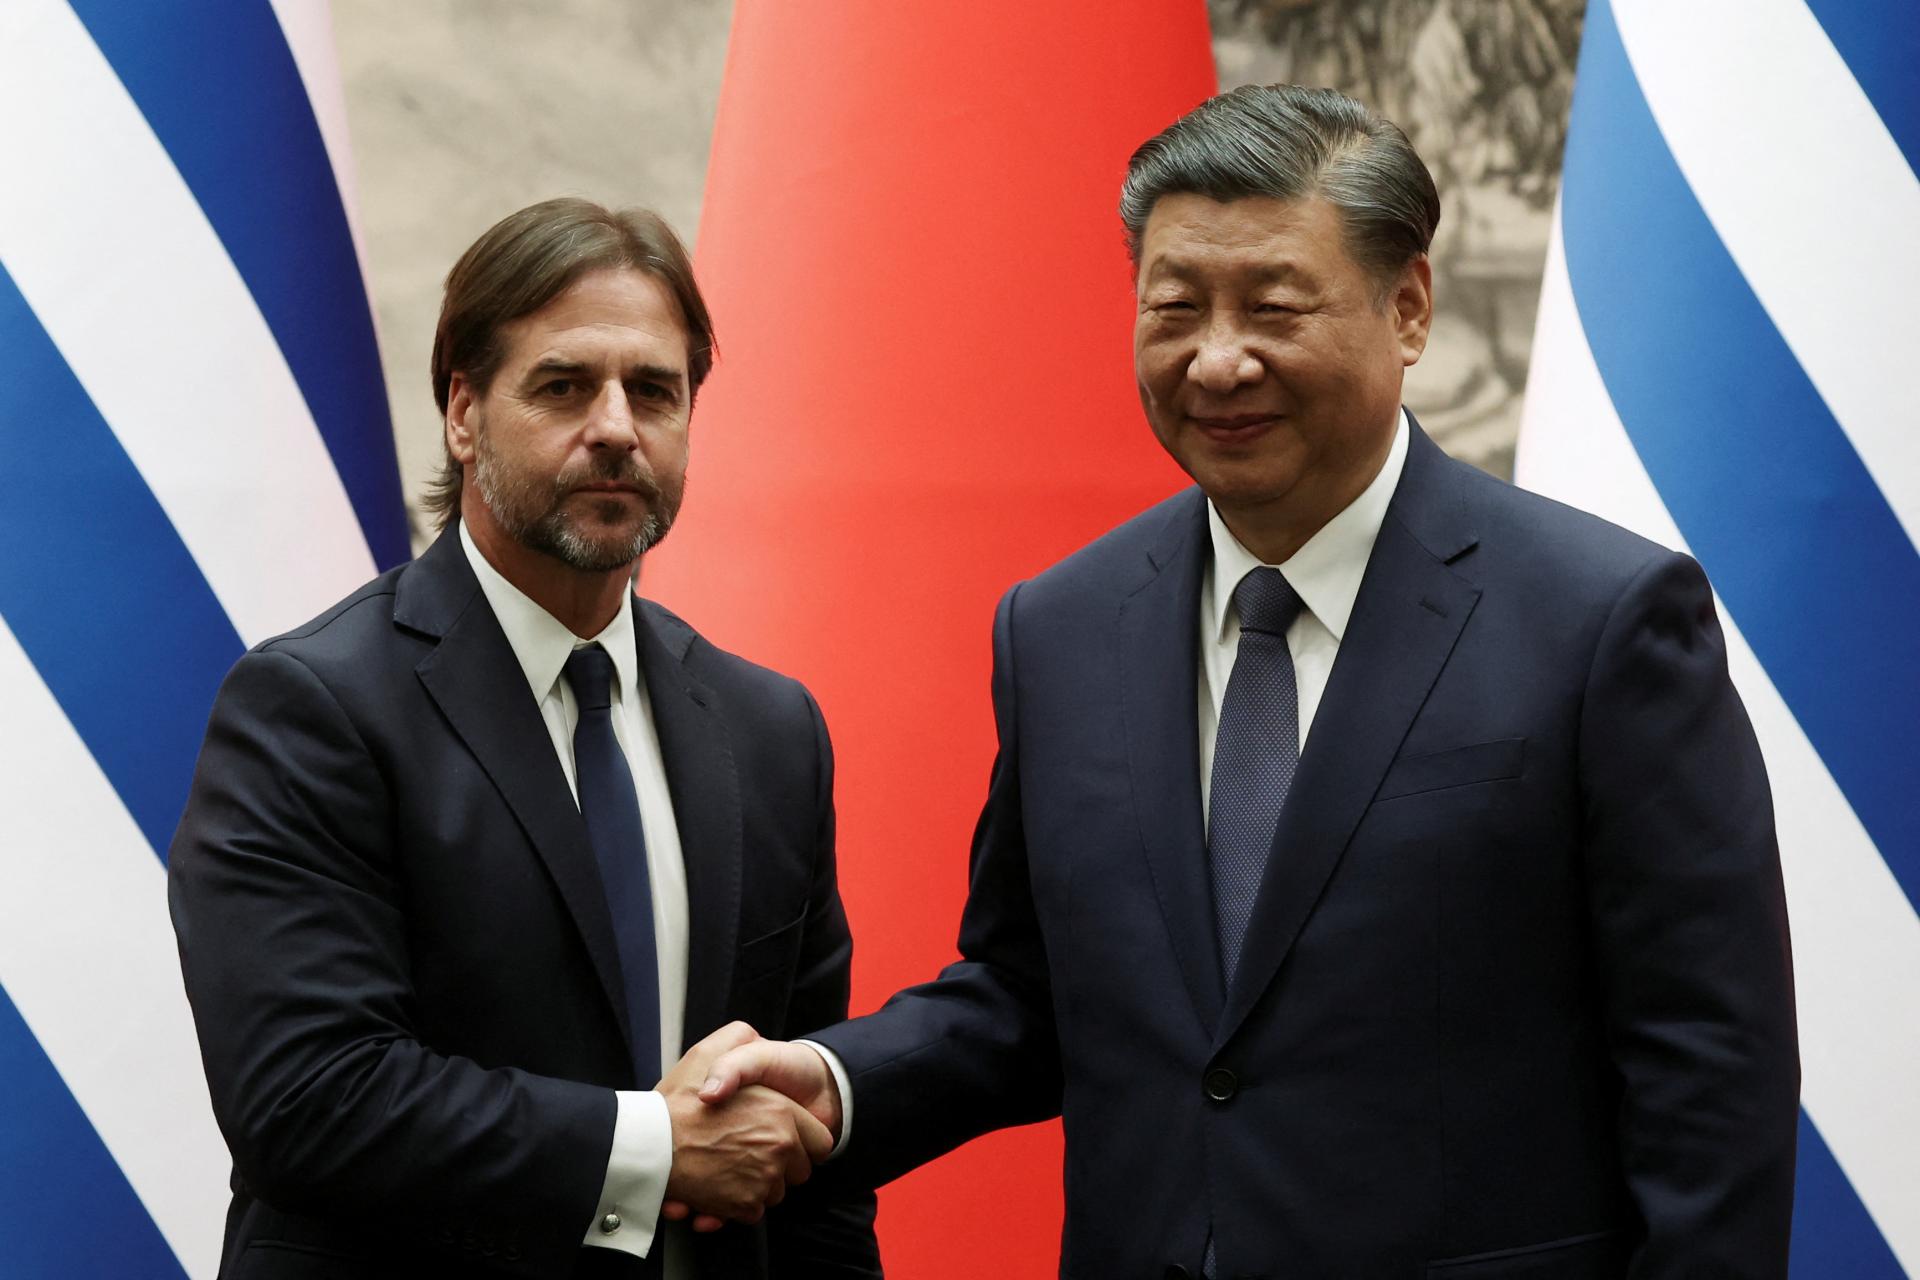 Čína a Uruguaj posilnili vzťahy pri stretnutí svojich lídrov v Pekingu